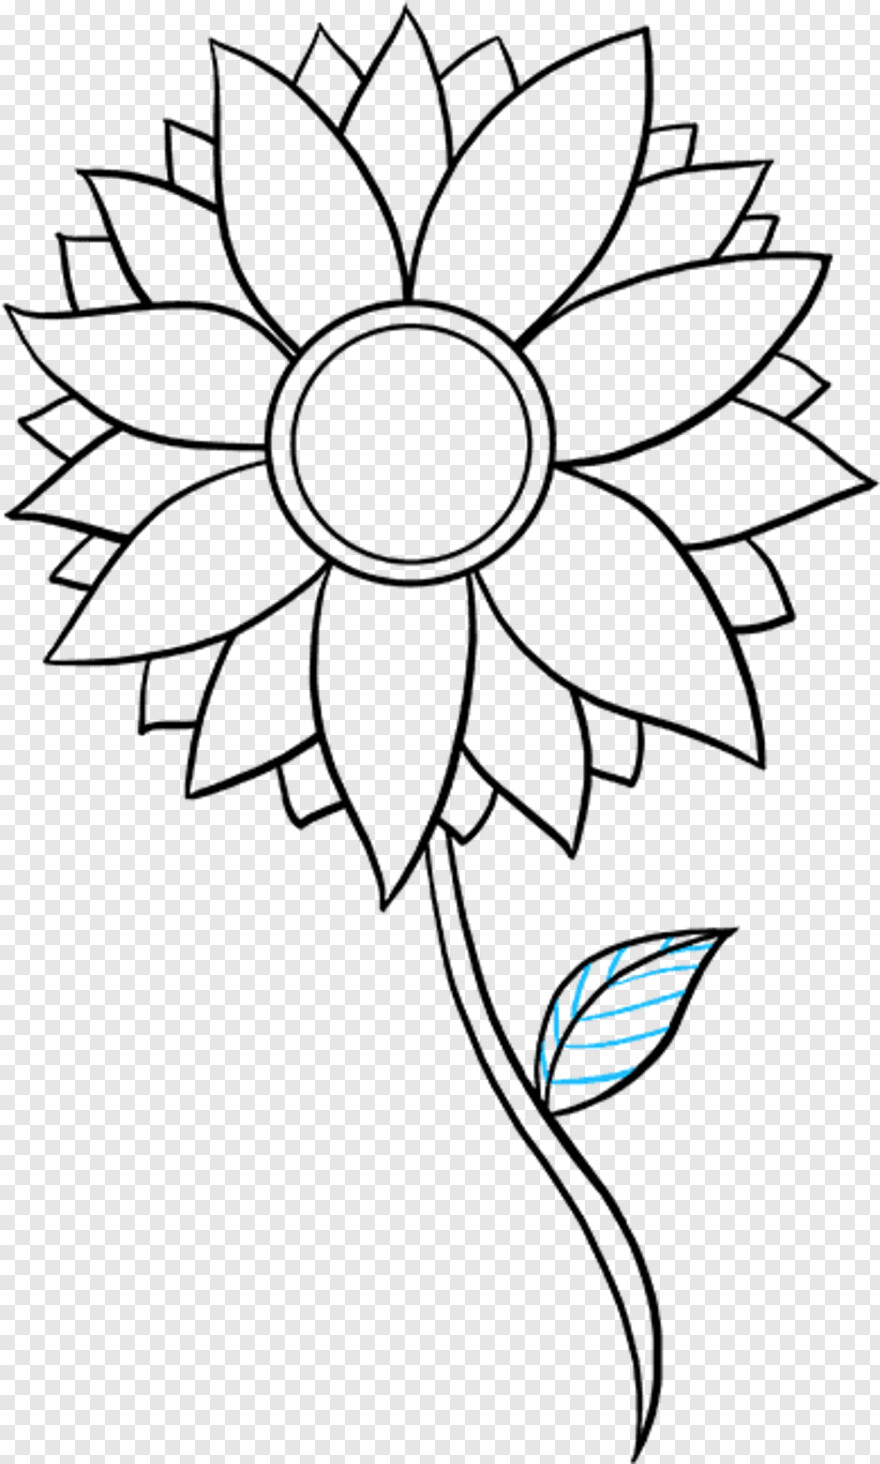 sunflower-vector # 354723